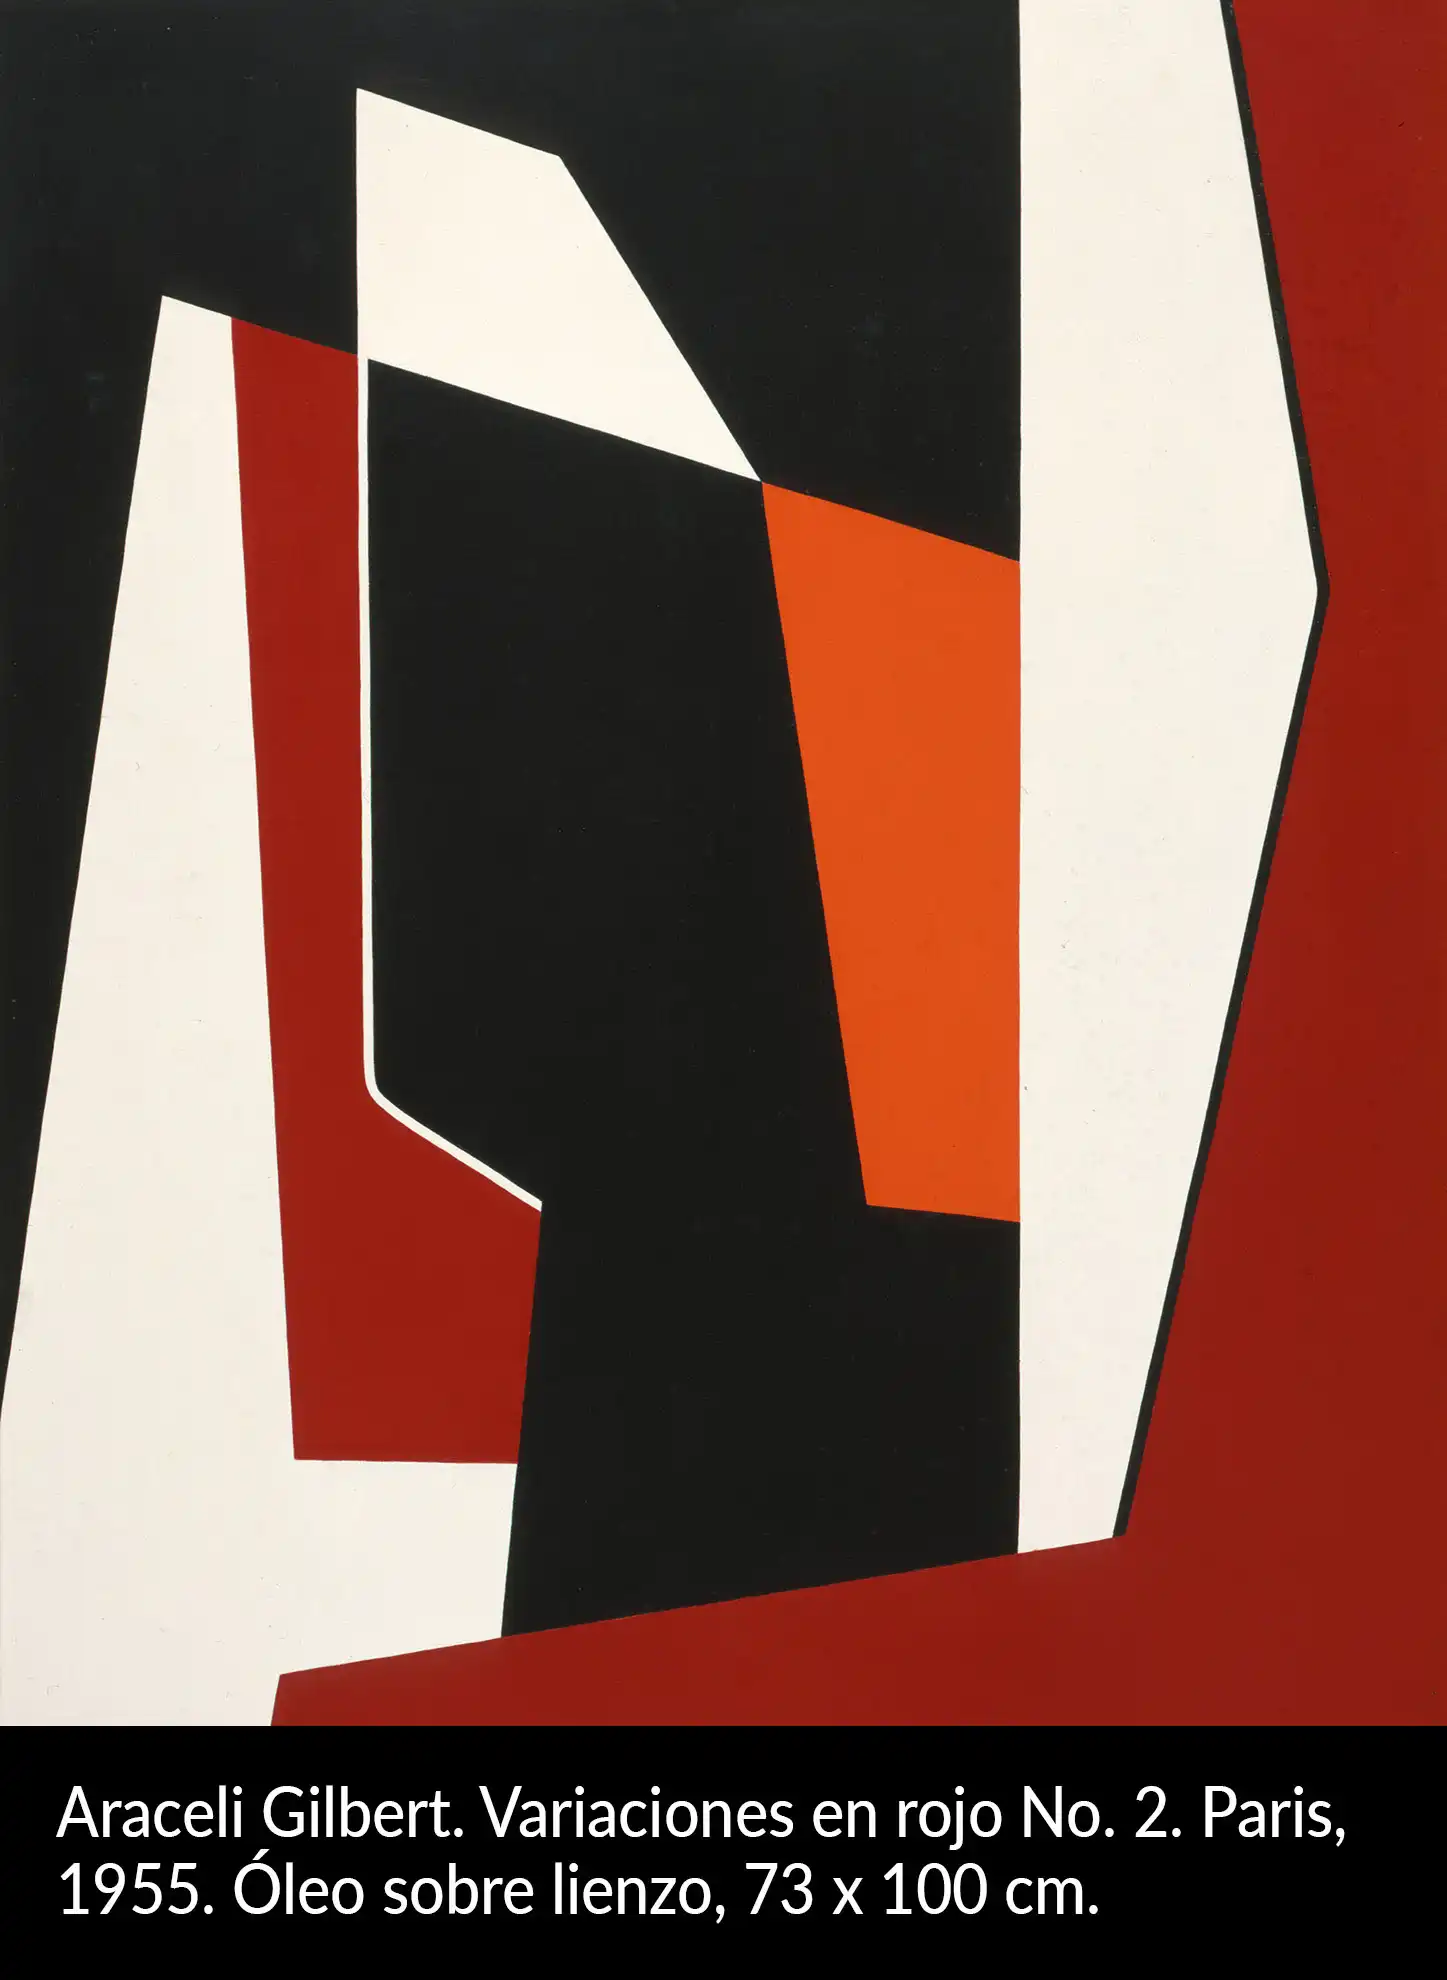 Araceli Gilbert. Variaciones en rojo No 2, 1955.